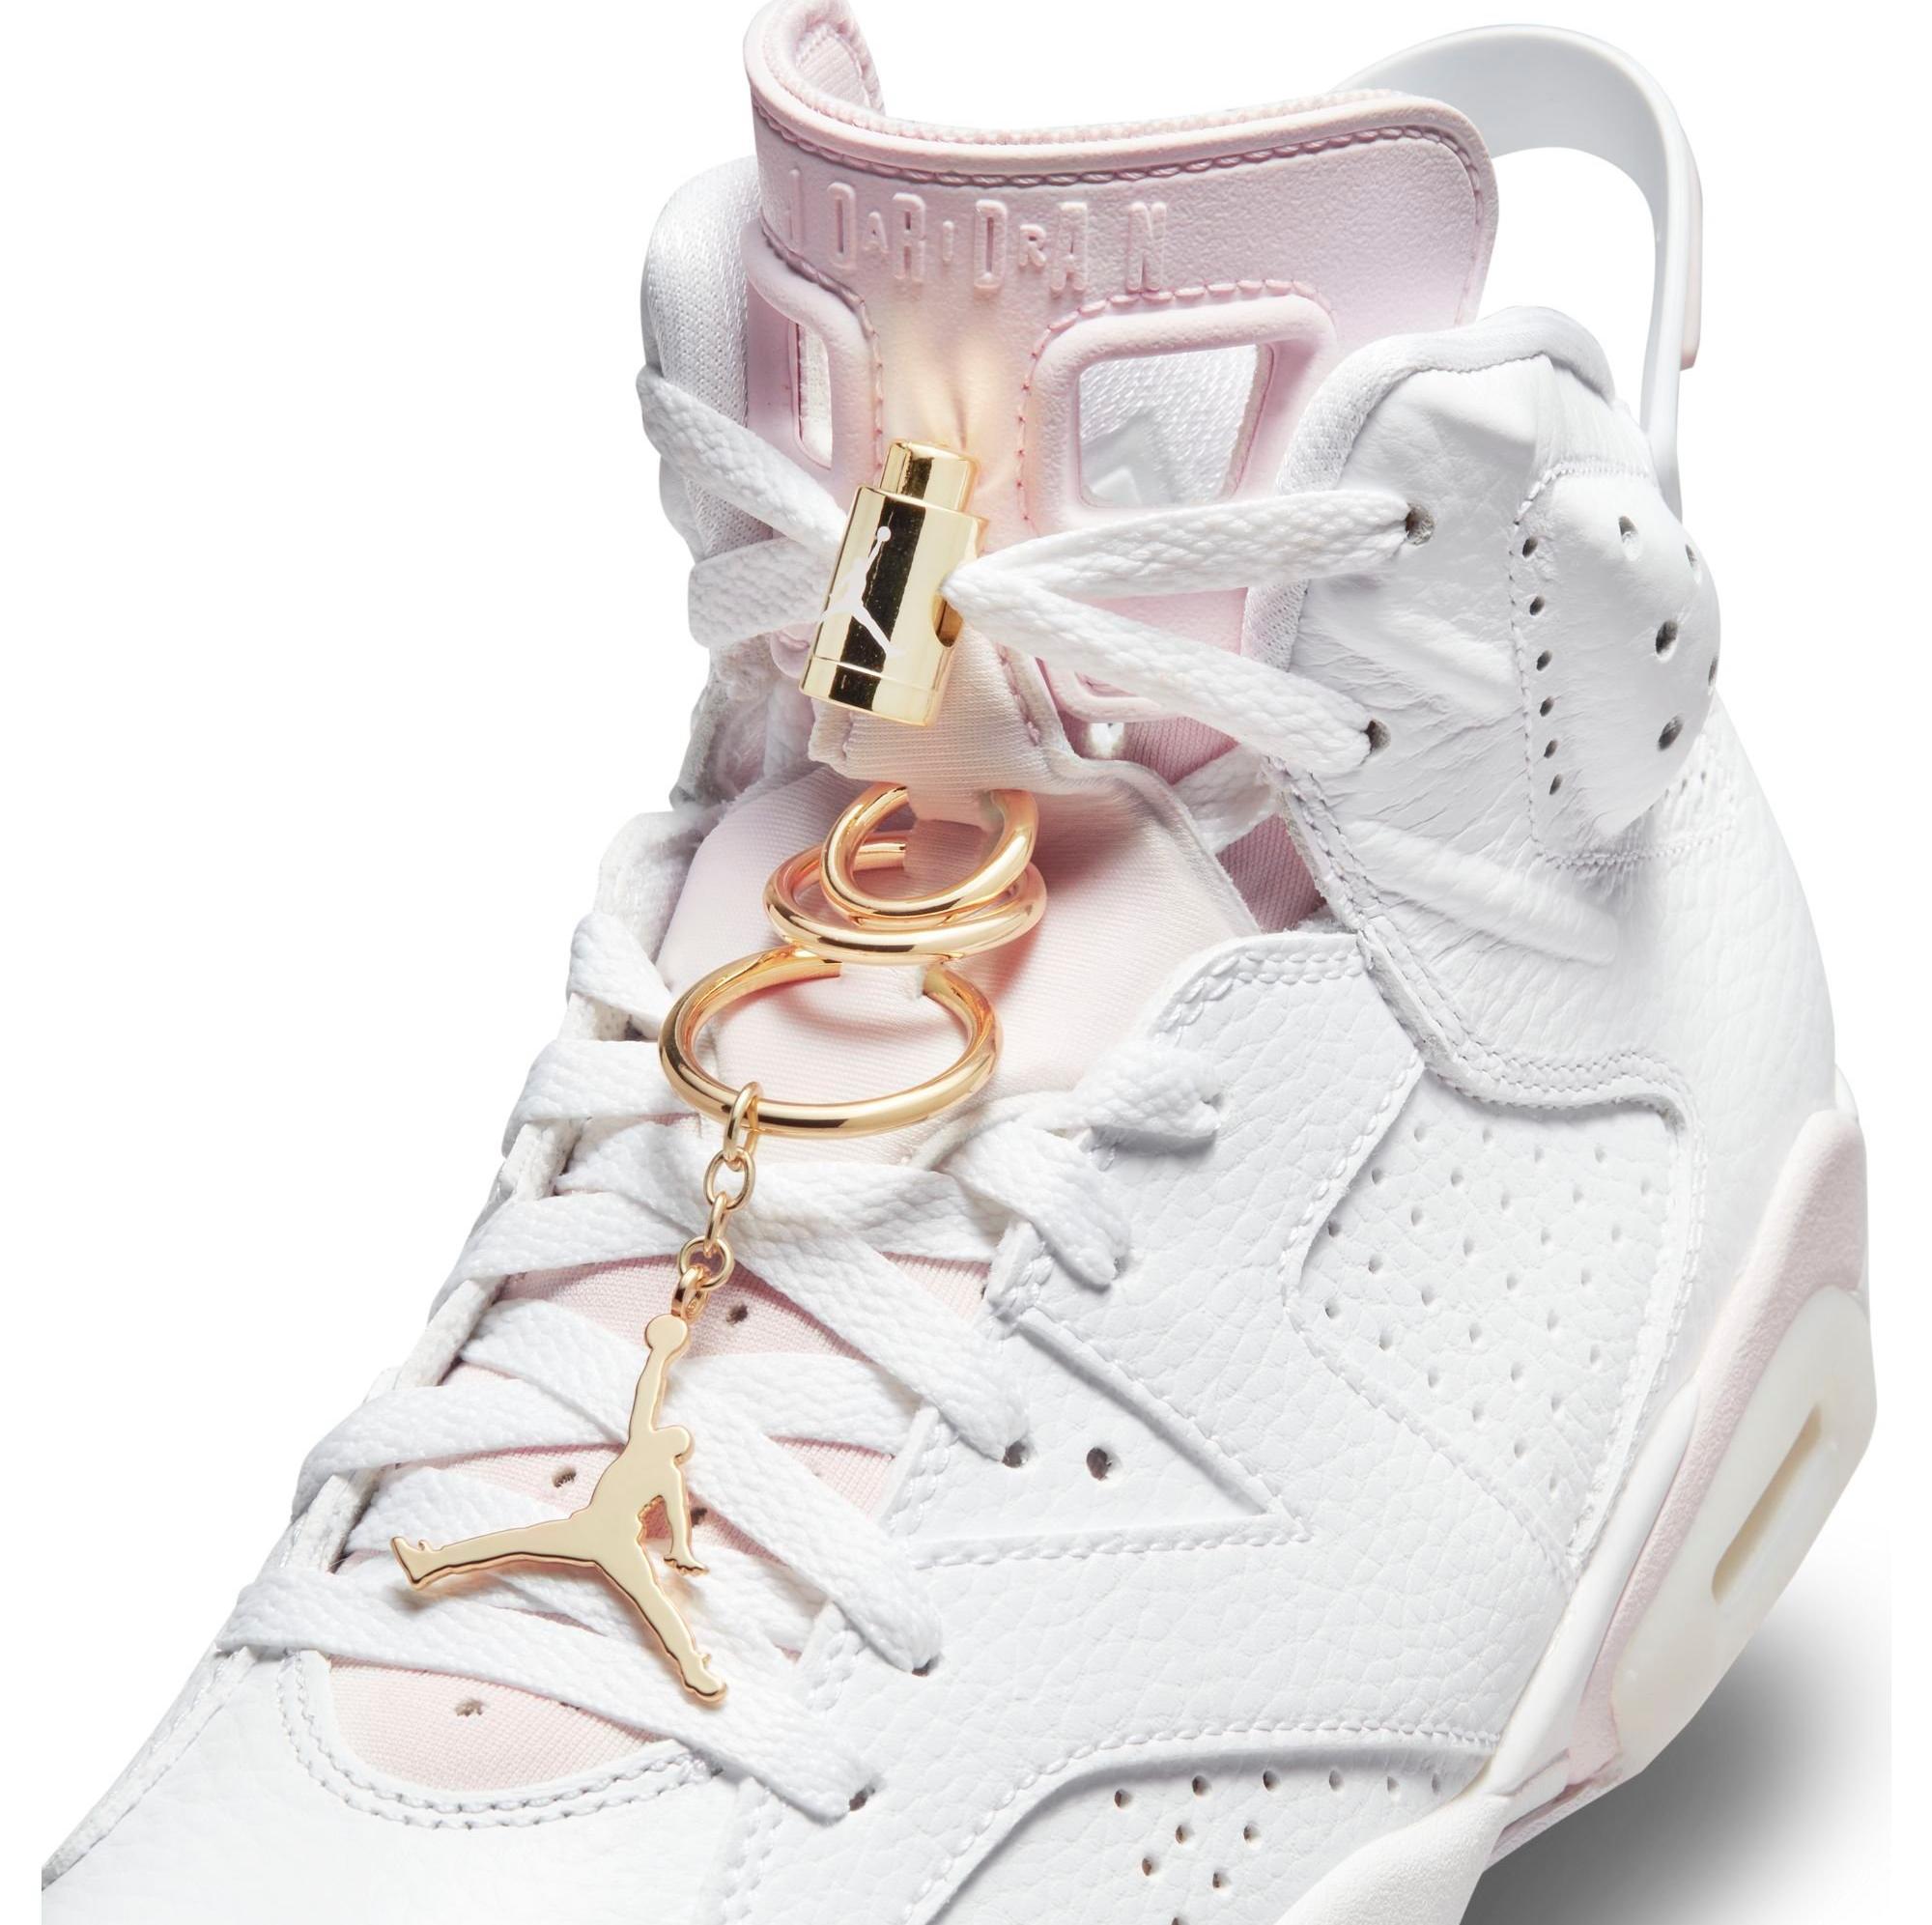 Sneakers Release – Women’s-Exclusive Jordan 6 Retro “Gold Hoops